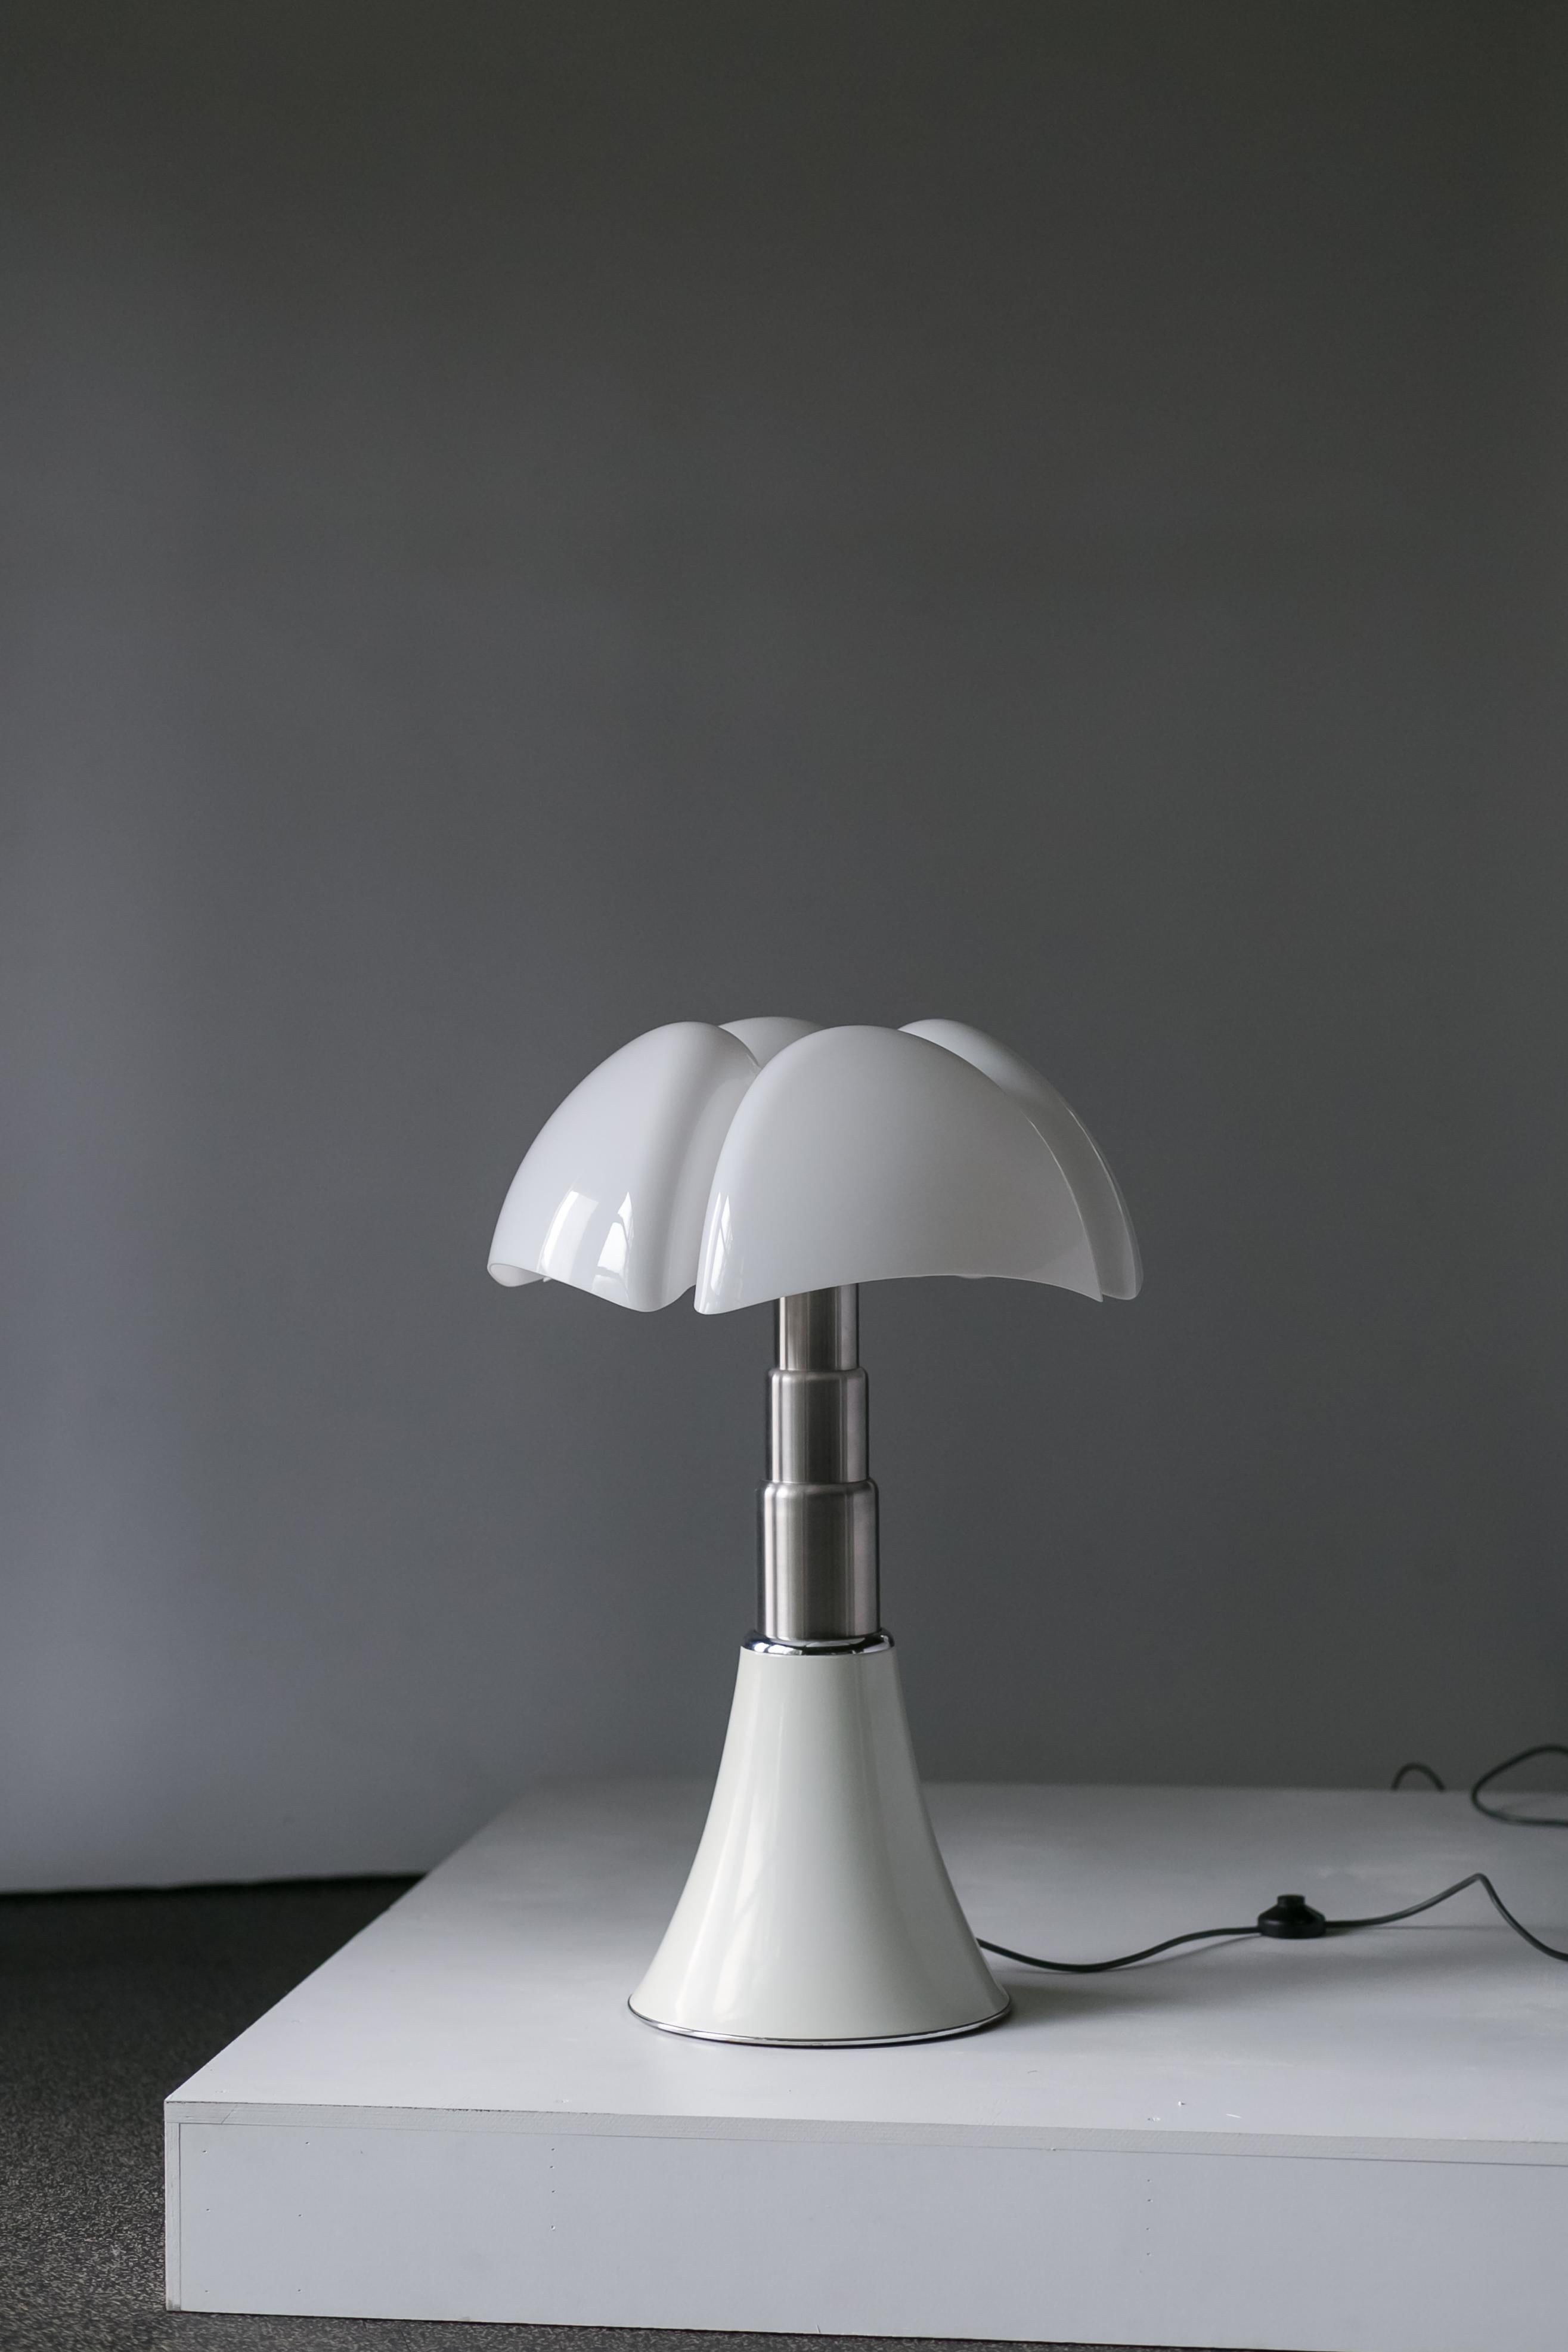 Mid-20th Century Original Pipistrello Lamp by Gae Auelenti  for Martenelli Luce, Italy, c. 1965